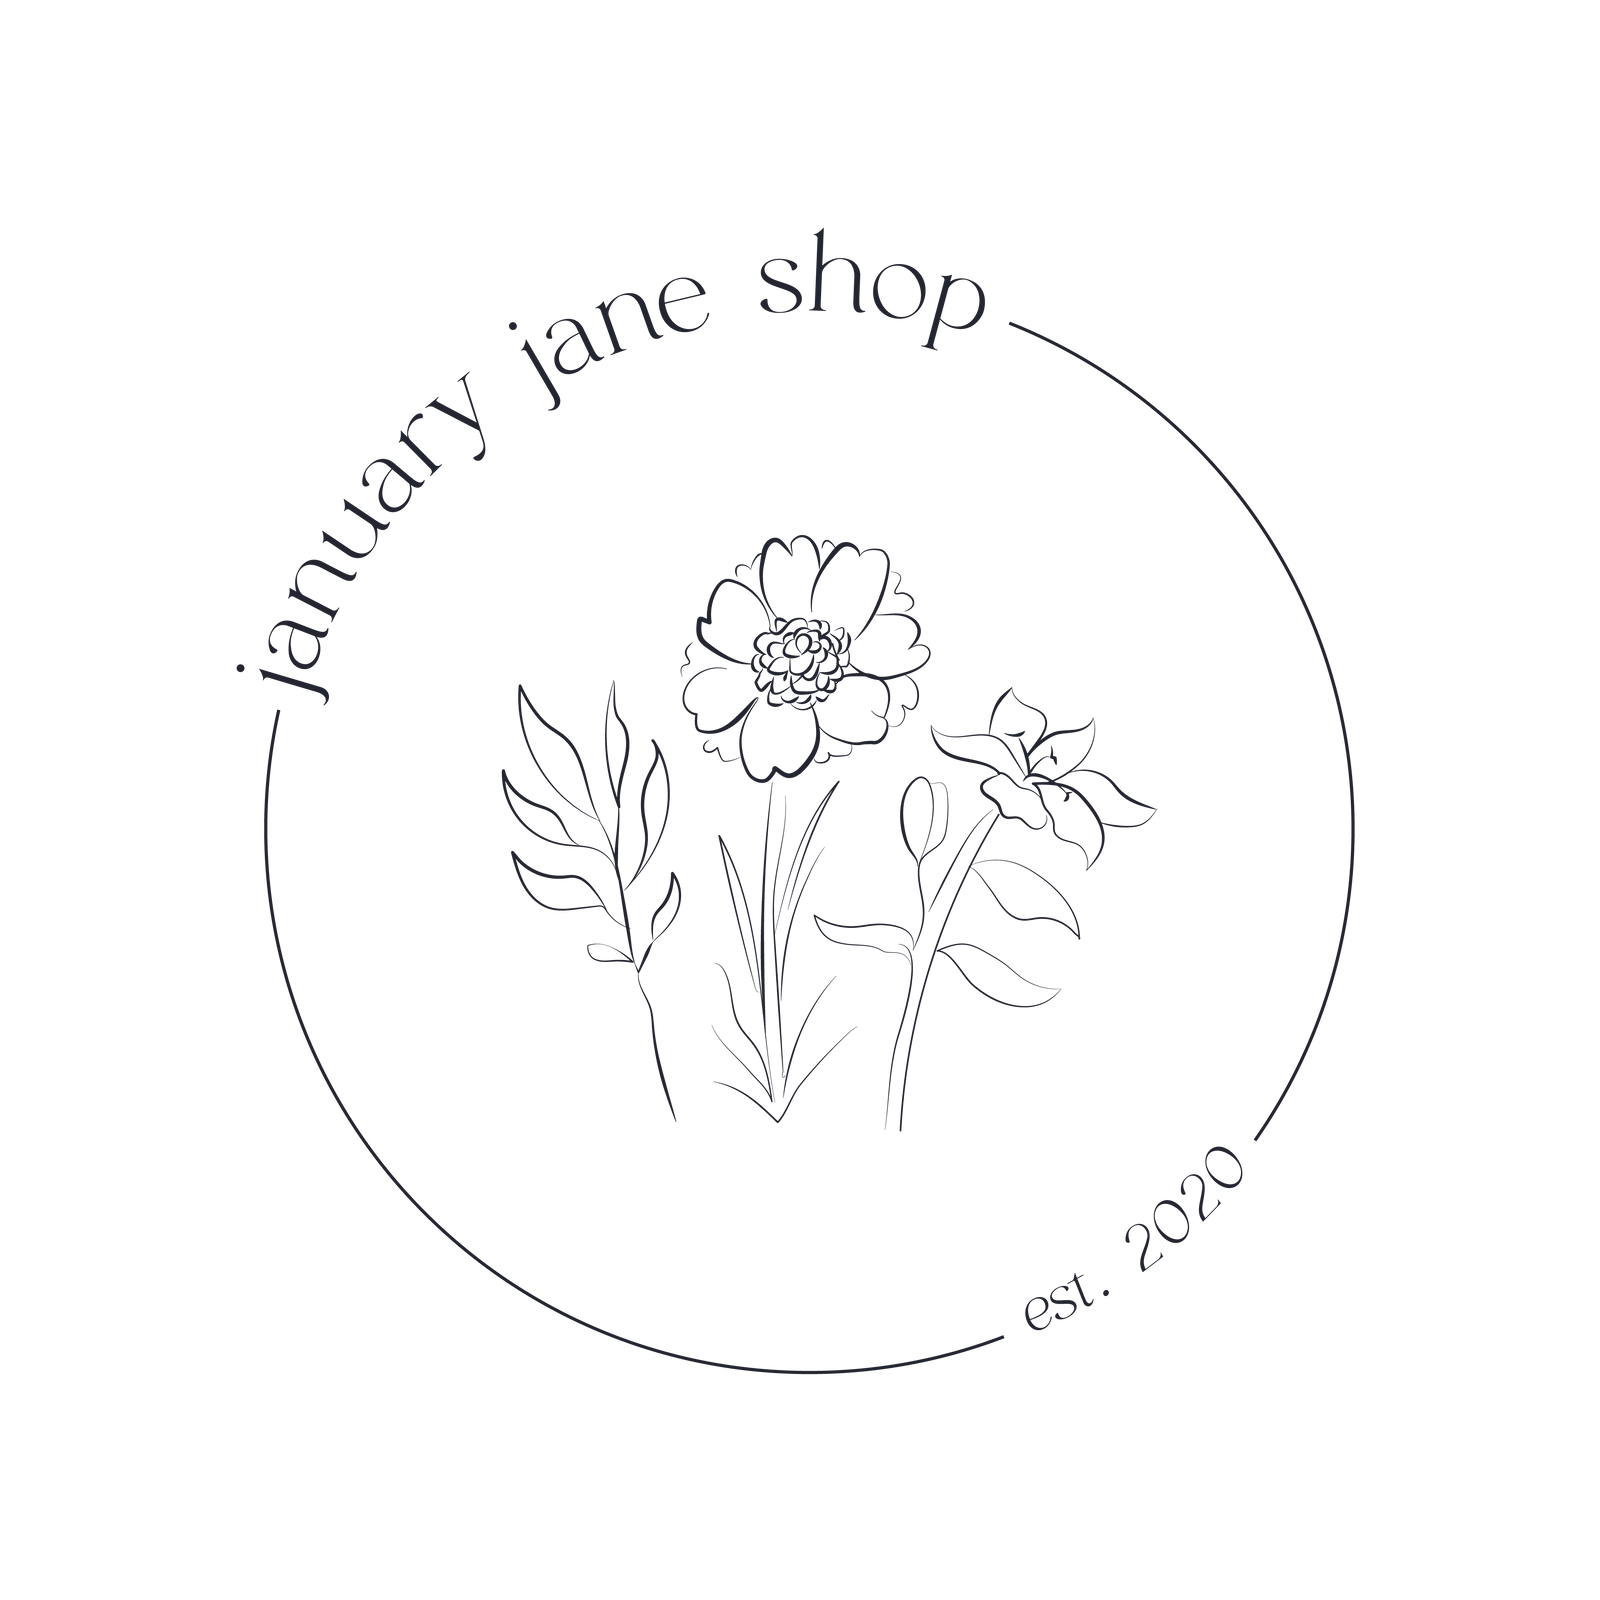 January Jane Shop